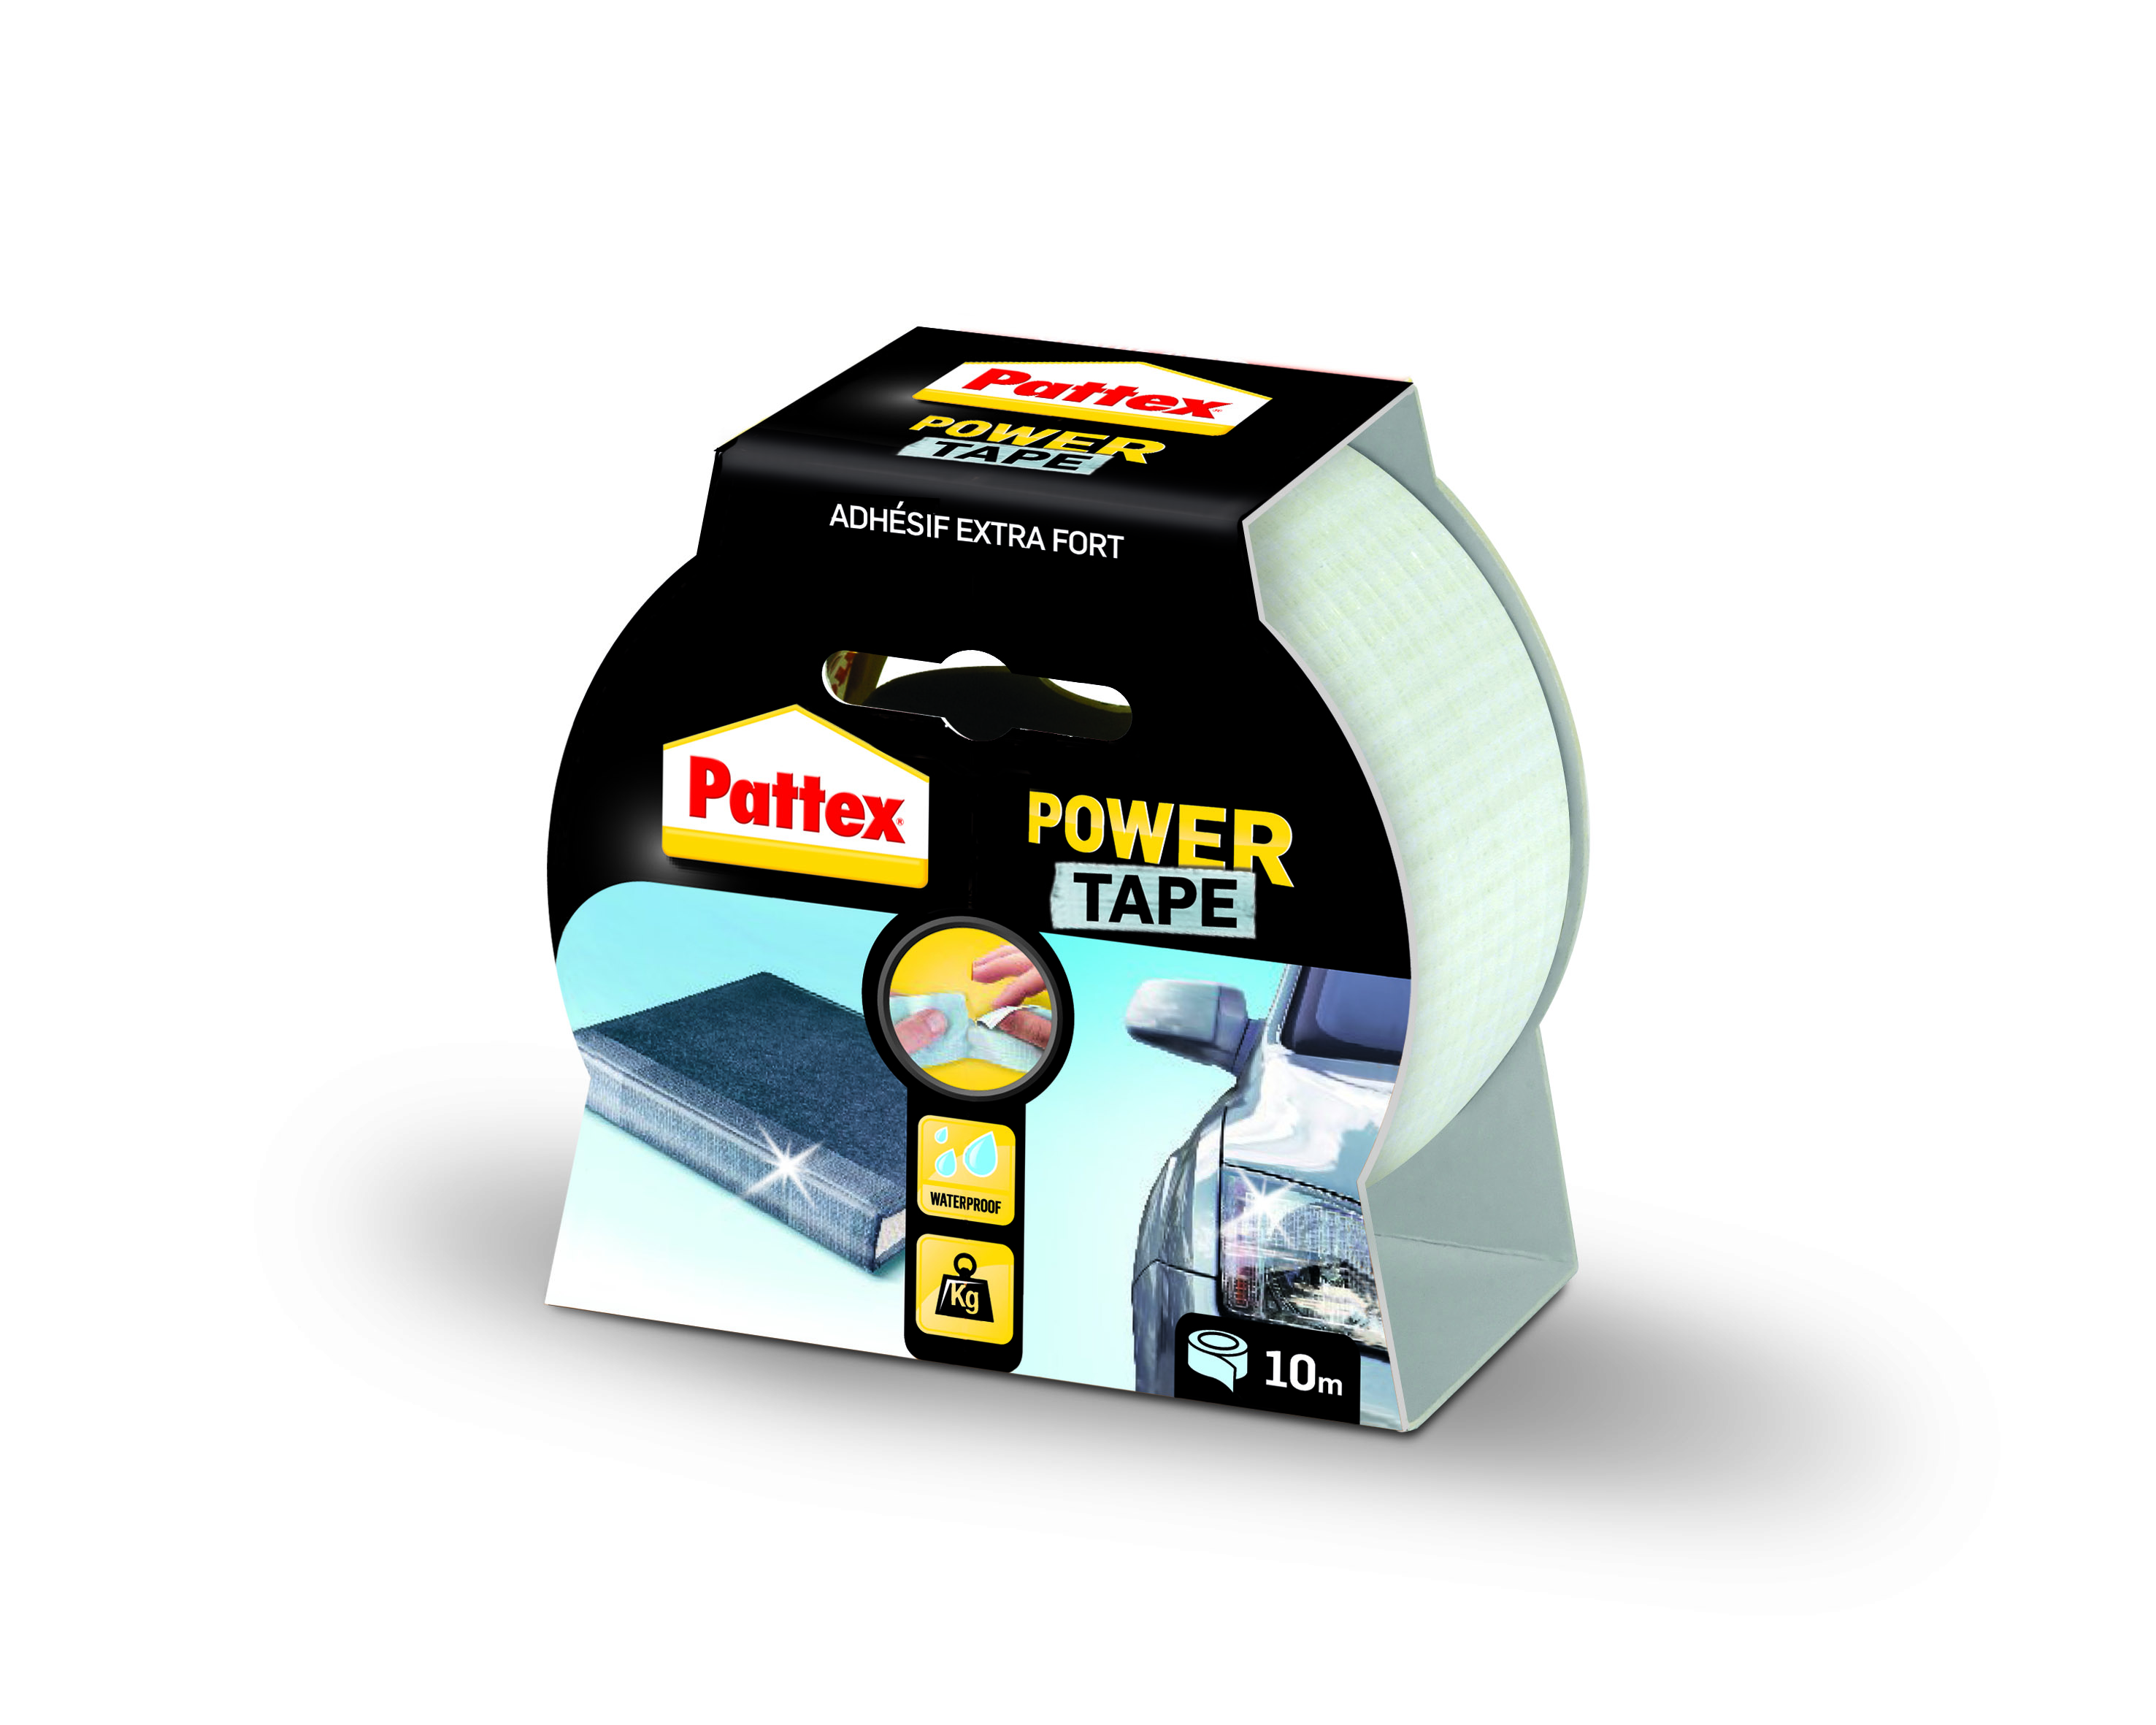 Pattex adhésifs réparation power tape invisible etui 10m - PATTEX